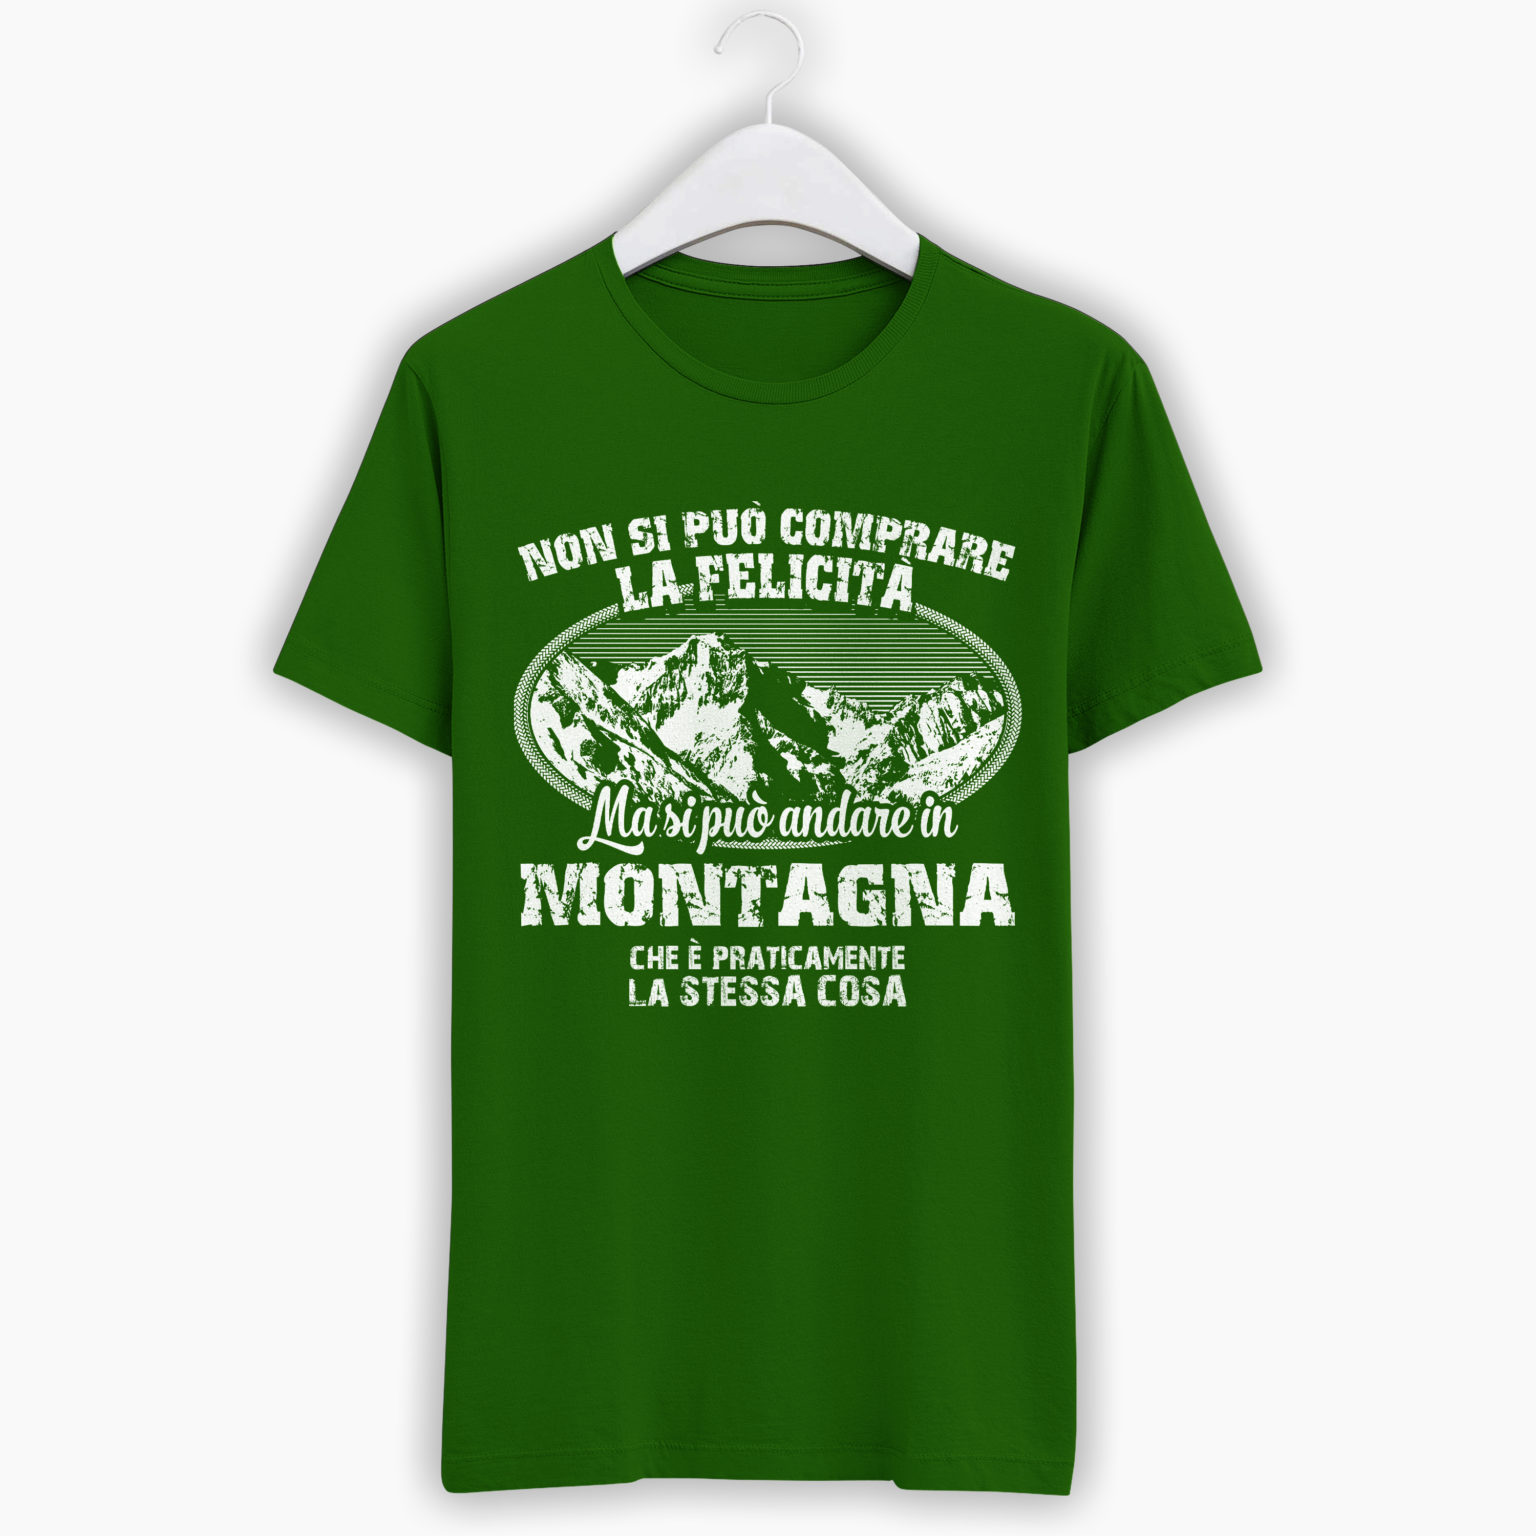 T-Shirt Montagna- Non si può comprare la felicità ma si può andare in montagna